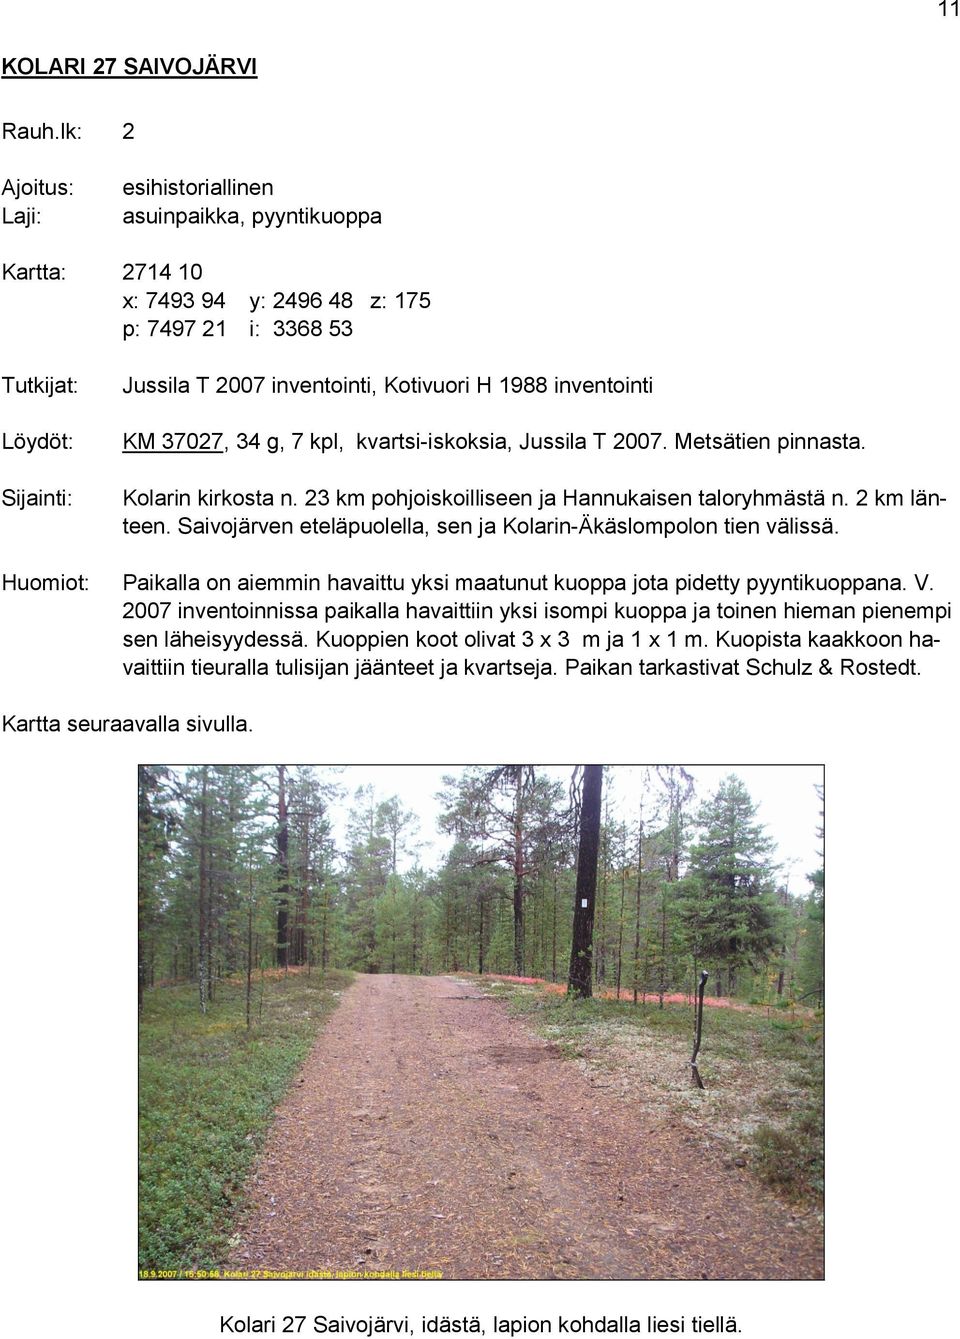 1988 inventointi KM 37027, 34 g, 7 kpl, kvartsi-iskoksia, Jussila T 2007. Metsätien pinnasta. Kolarin kirkosta n. 23 km pohjoiskoilliseen ja Hannukaisen taloryhmästä n. 2 km länteen.